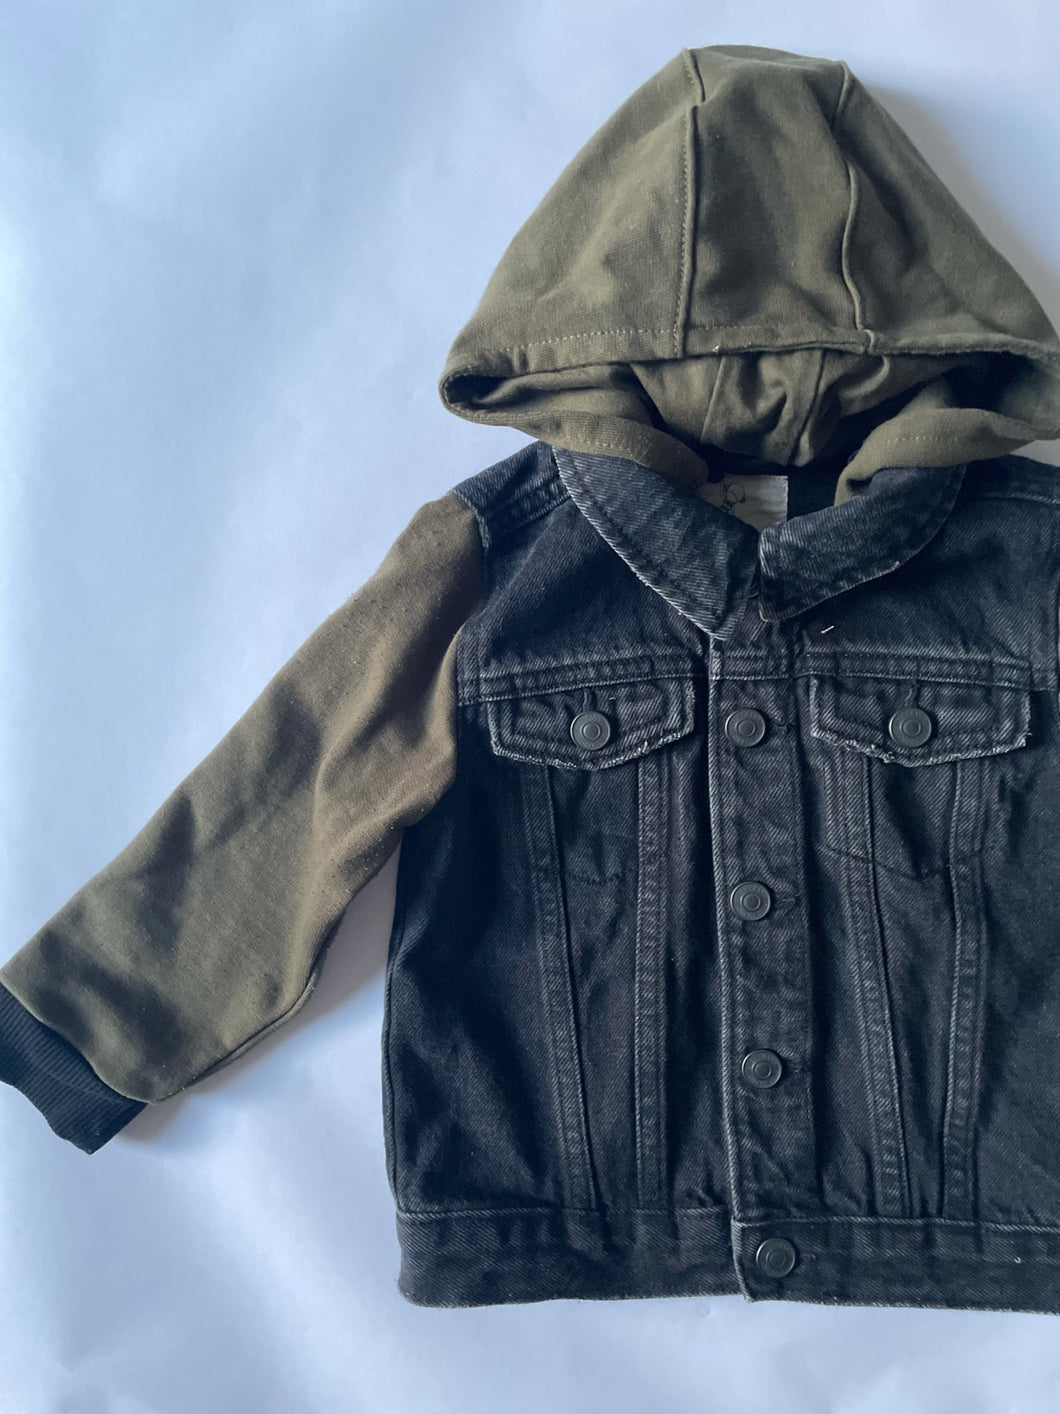 1.5-2 years - Hooded denim jacket